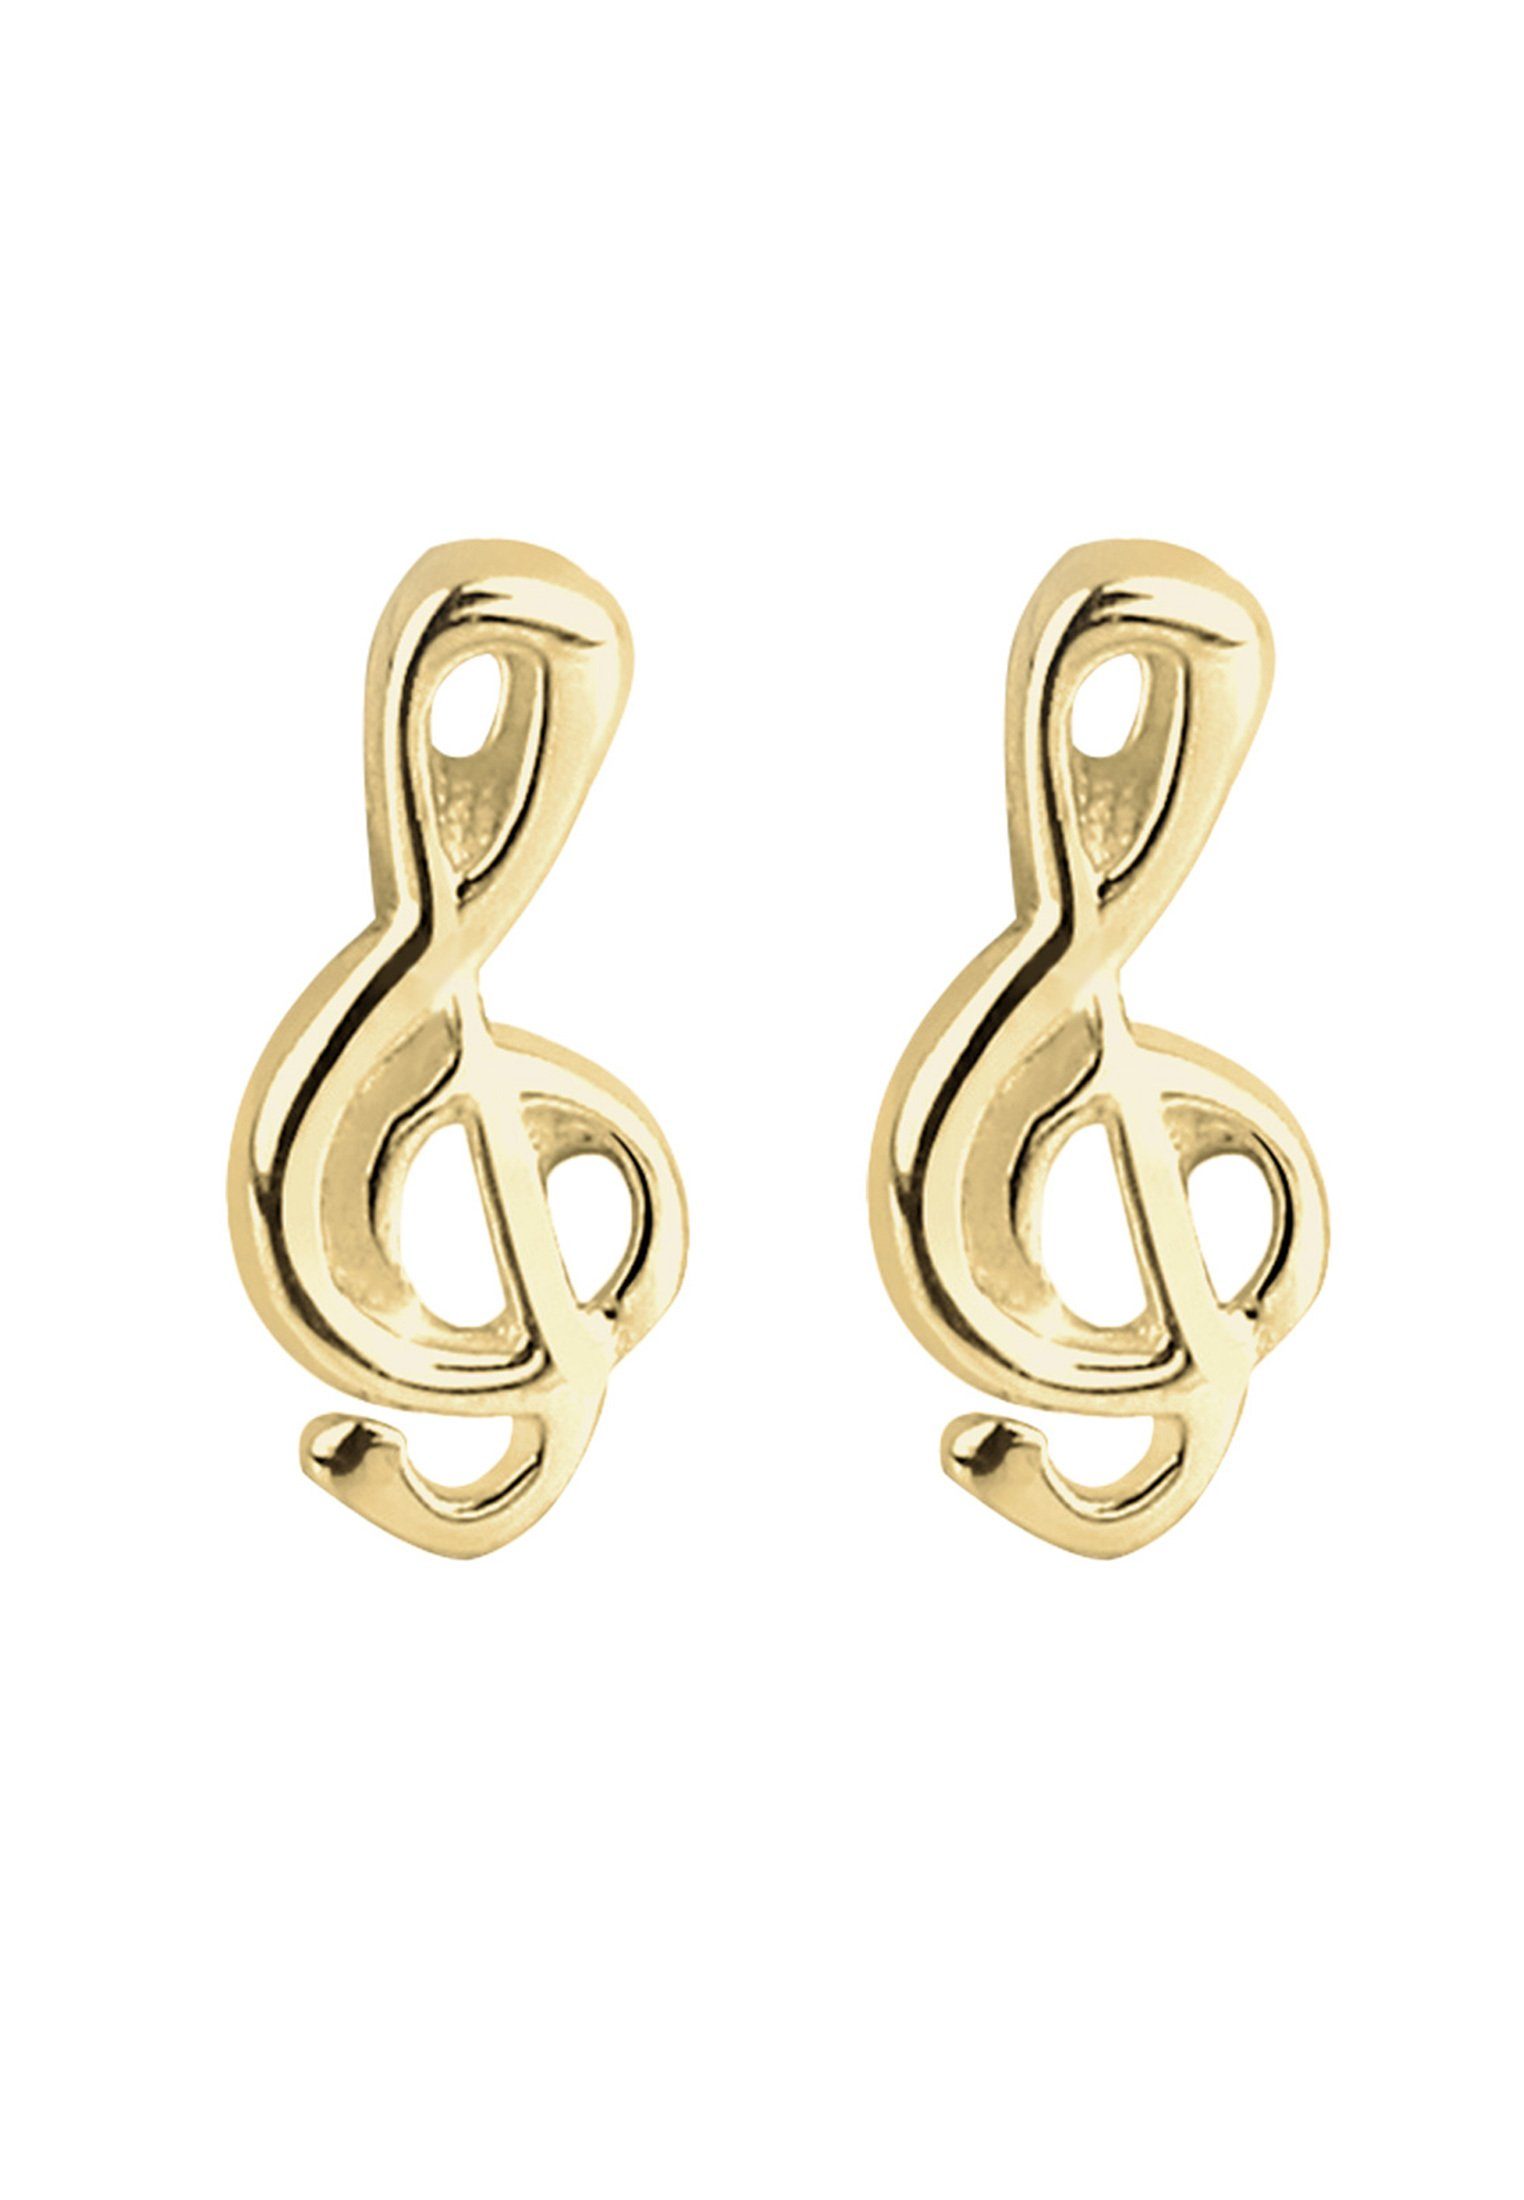 Premium hochwertiger Paar sehr Ohrstecker Juweliersqualität Elli In gefertigt Notenschlüssel Gelbgold, 375 Filigran Kinder